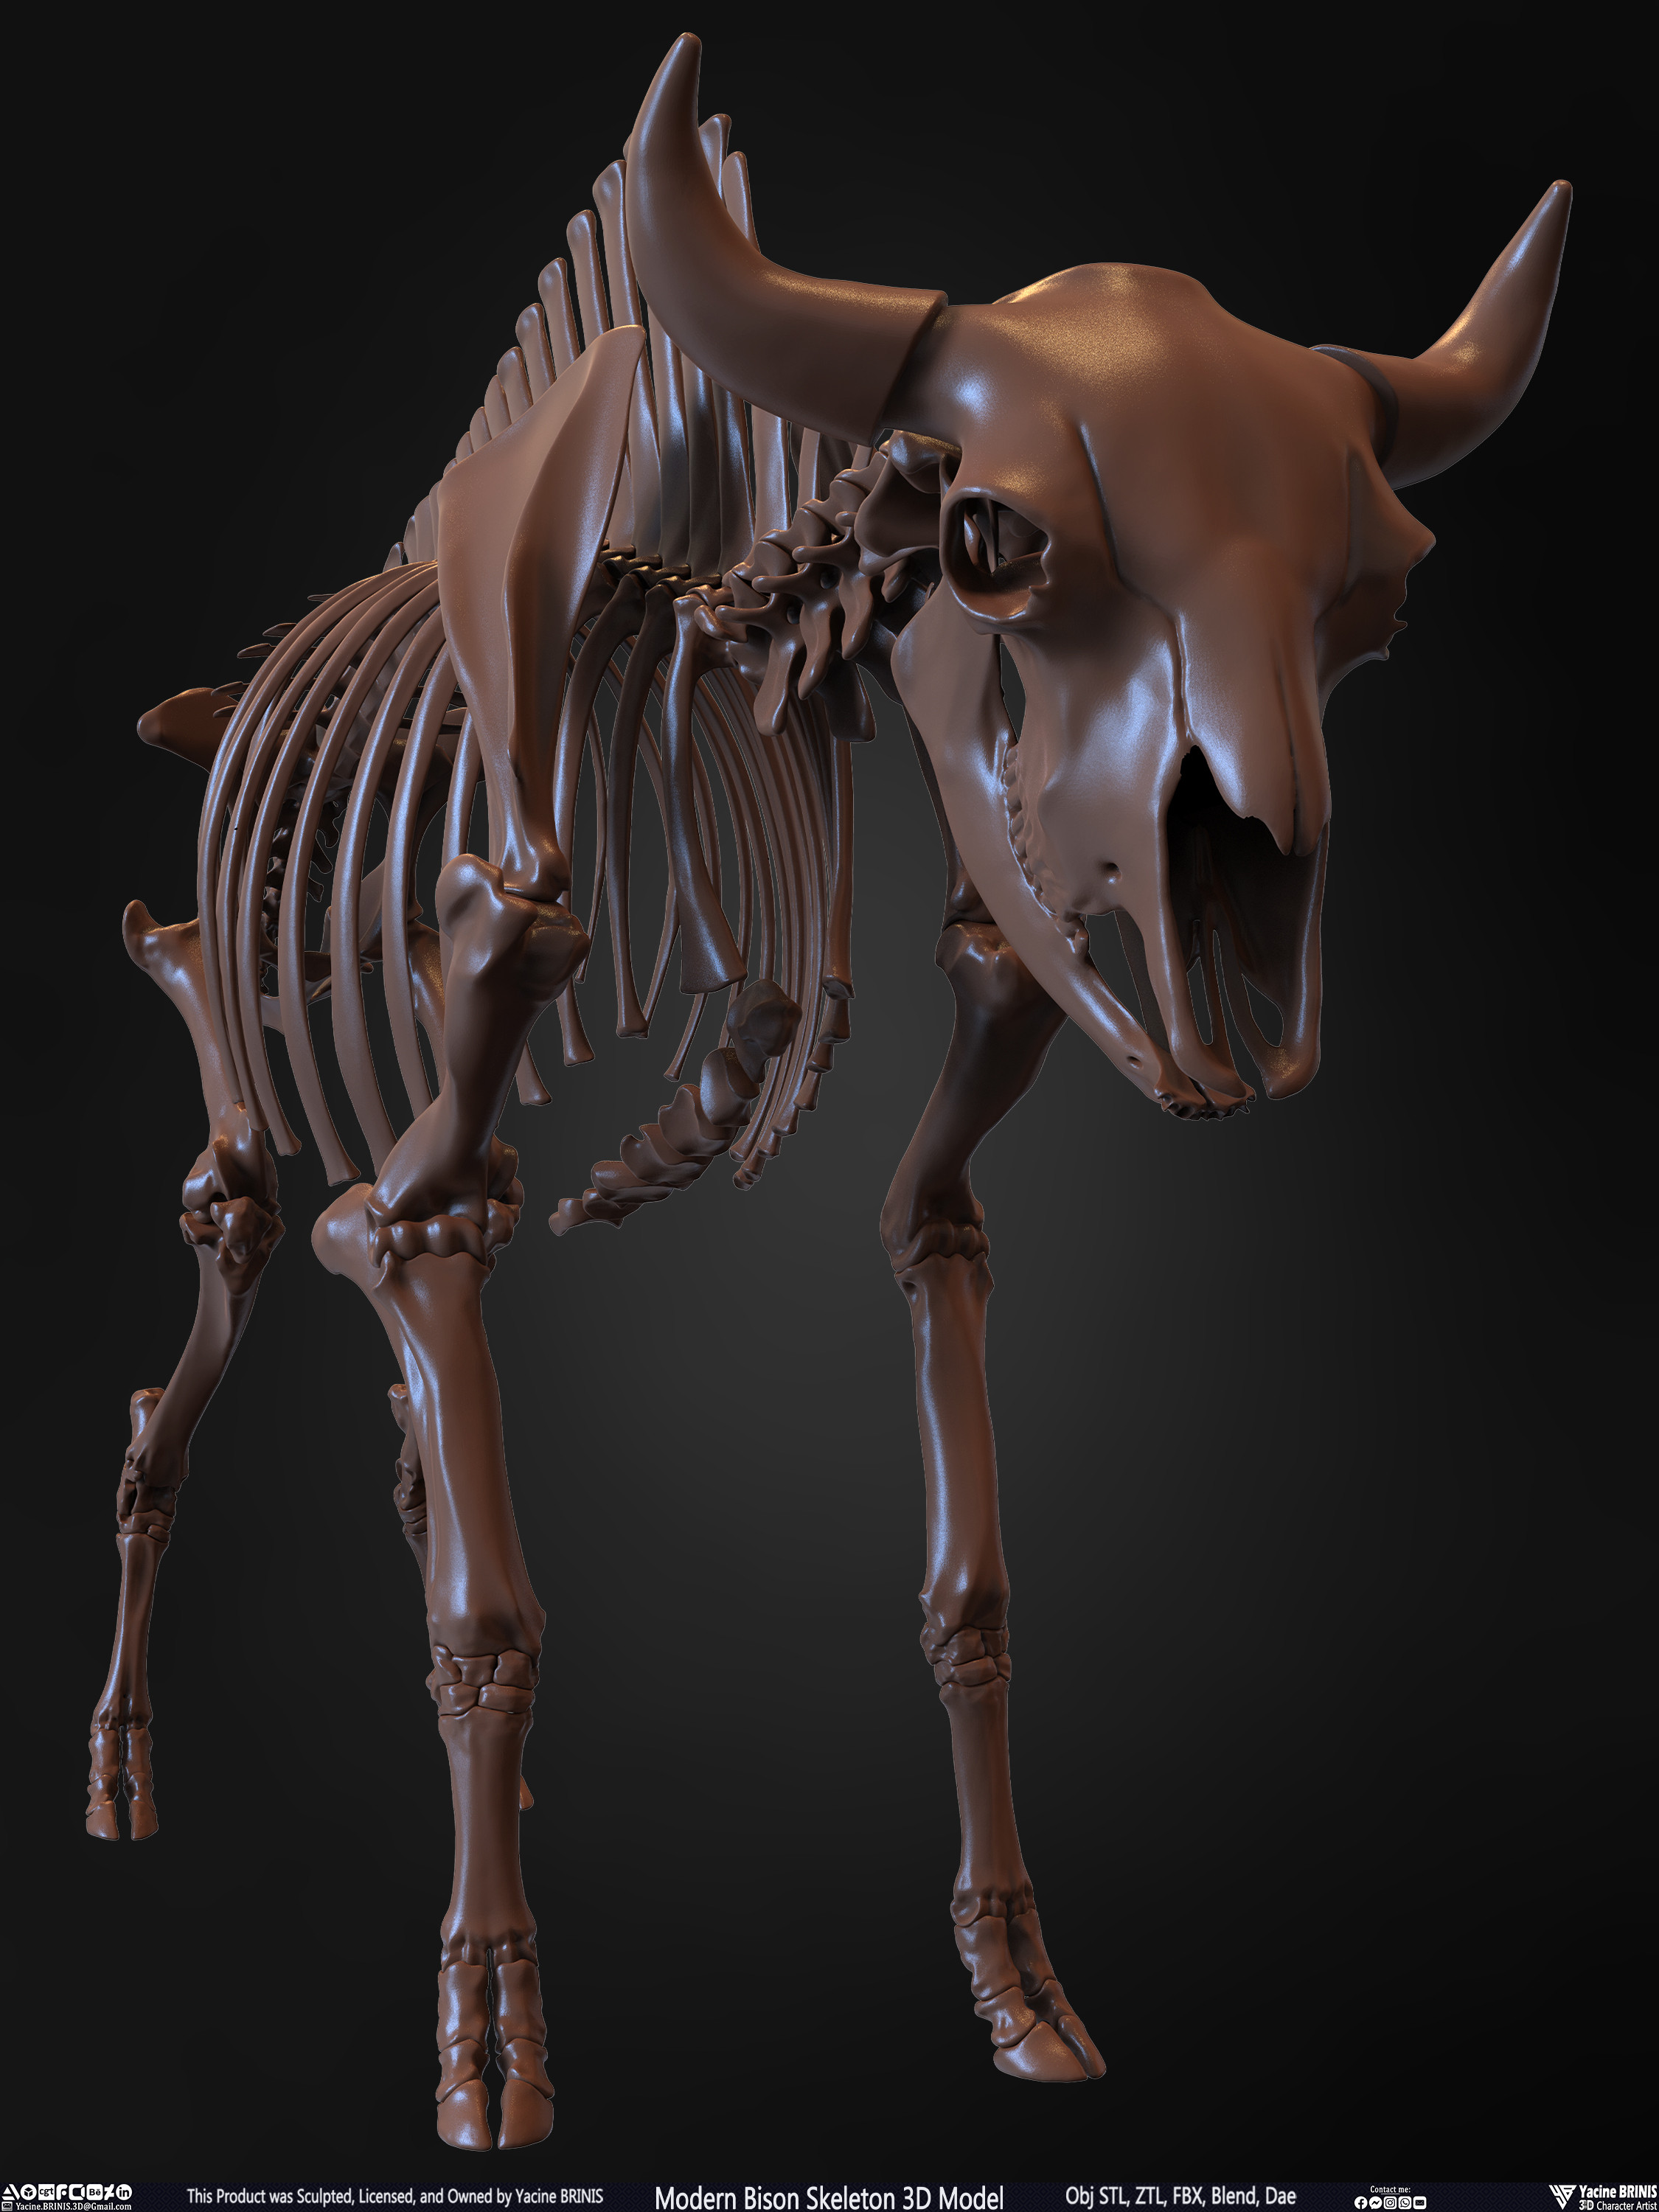 Modern Bison Skeleton 3D Model Sculpted by Yacine BRINIS Set 007